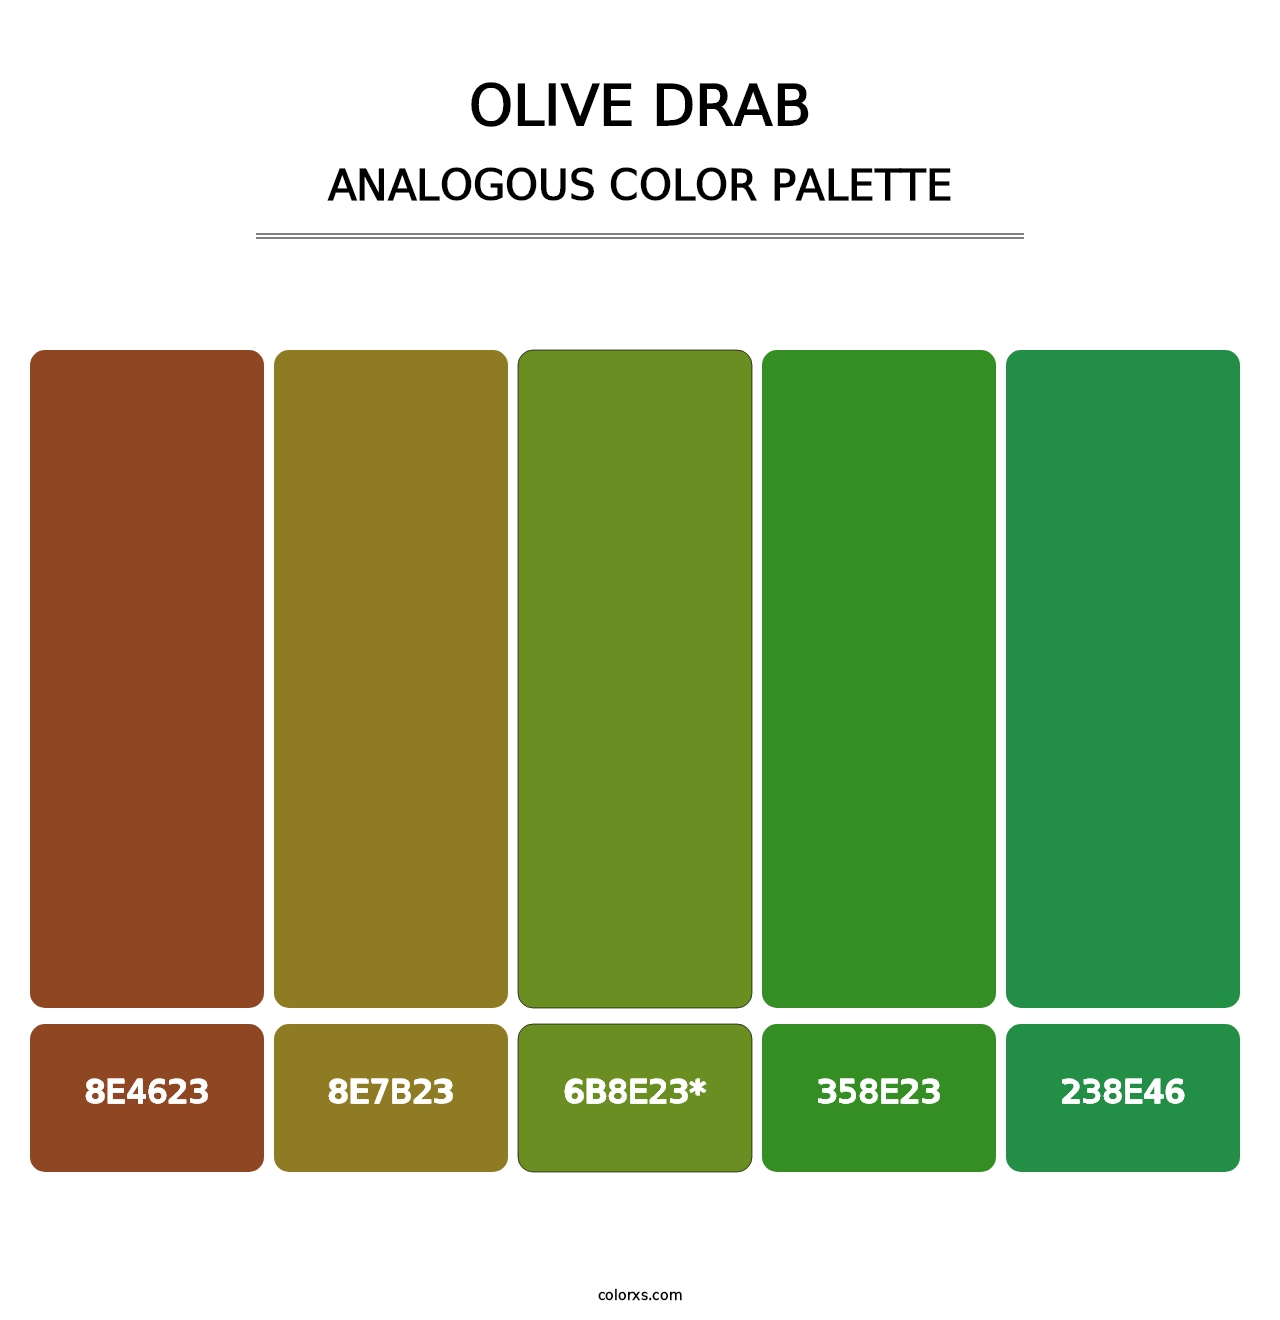 Olive Drab - Analogous Color Palette